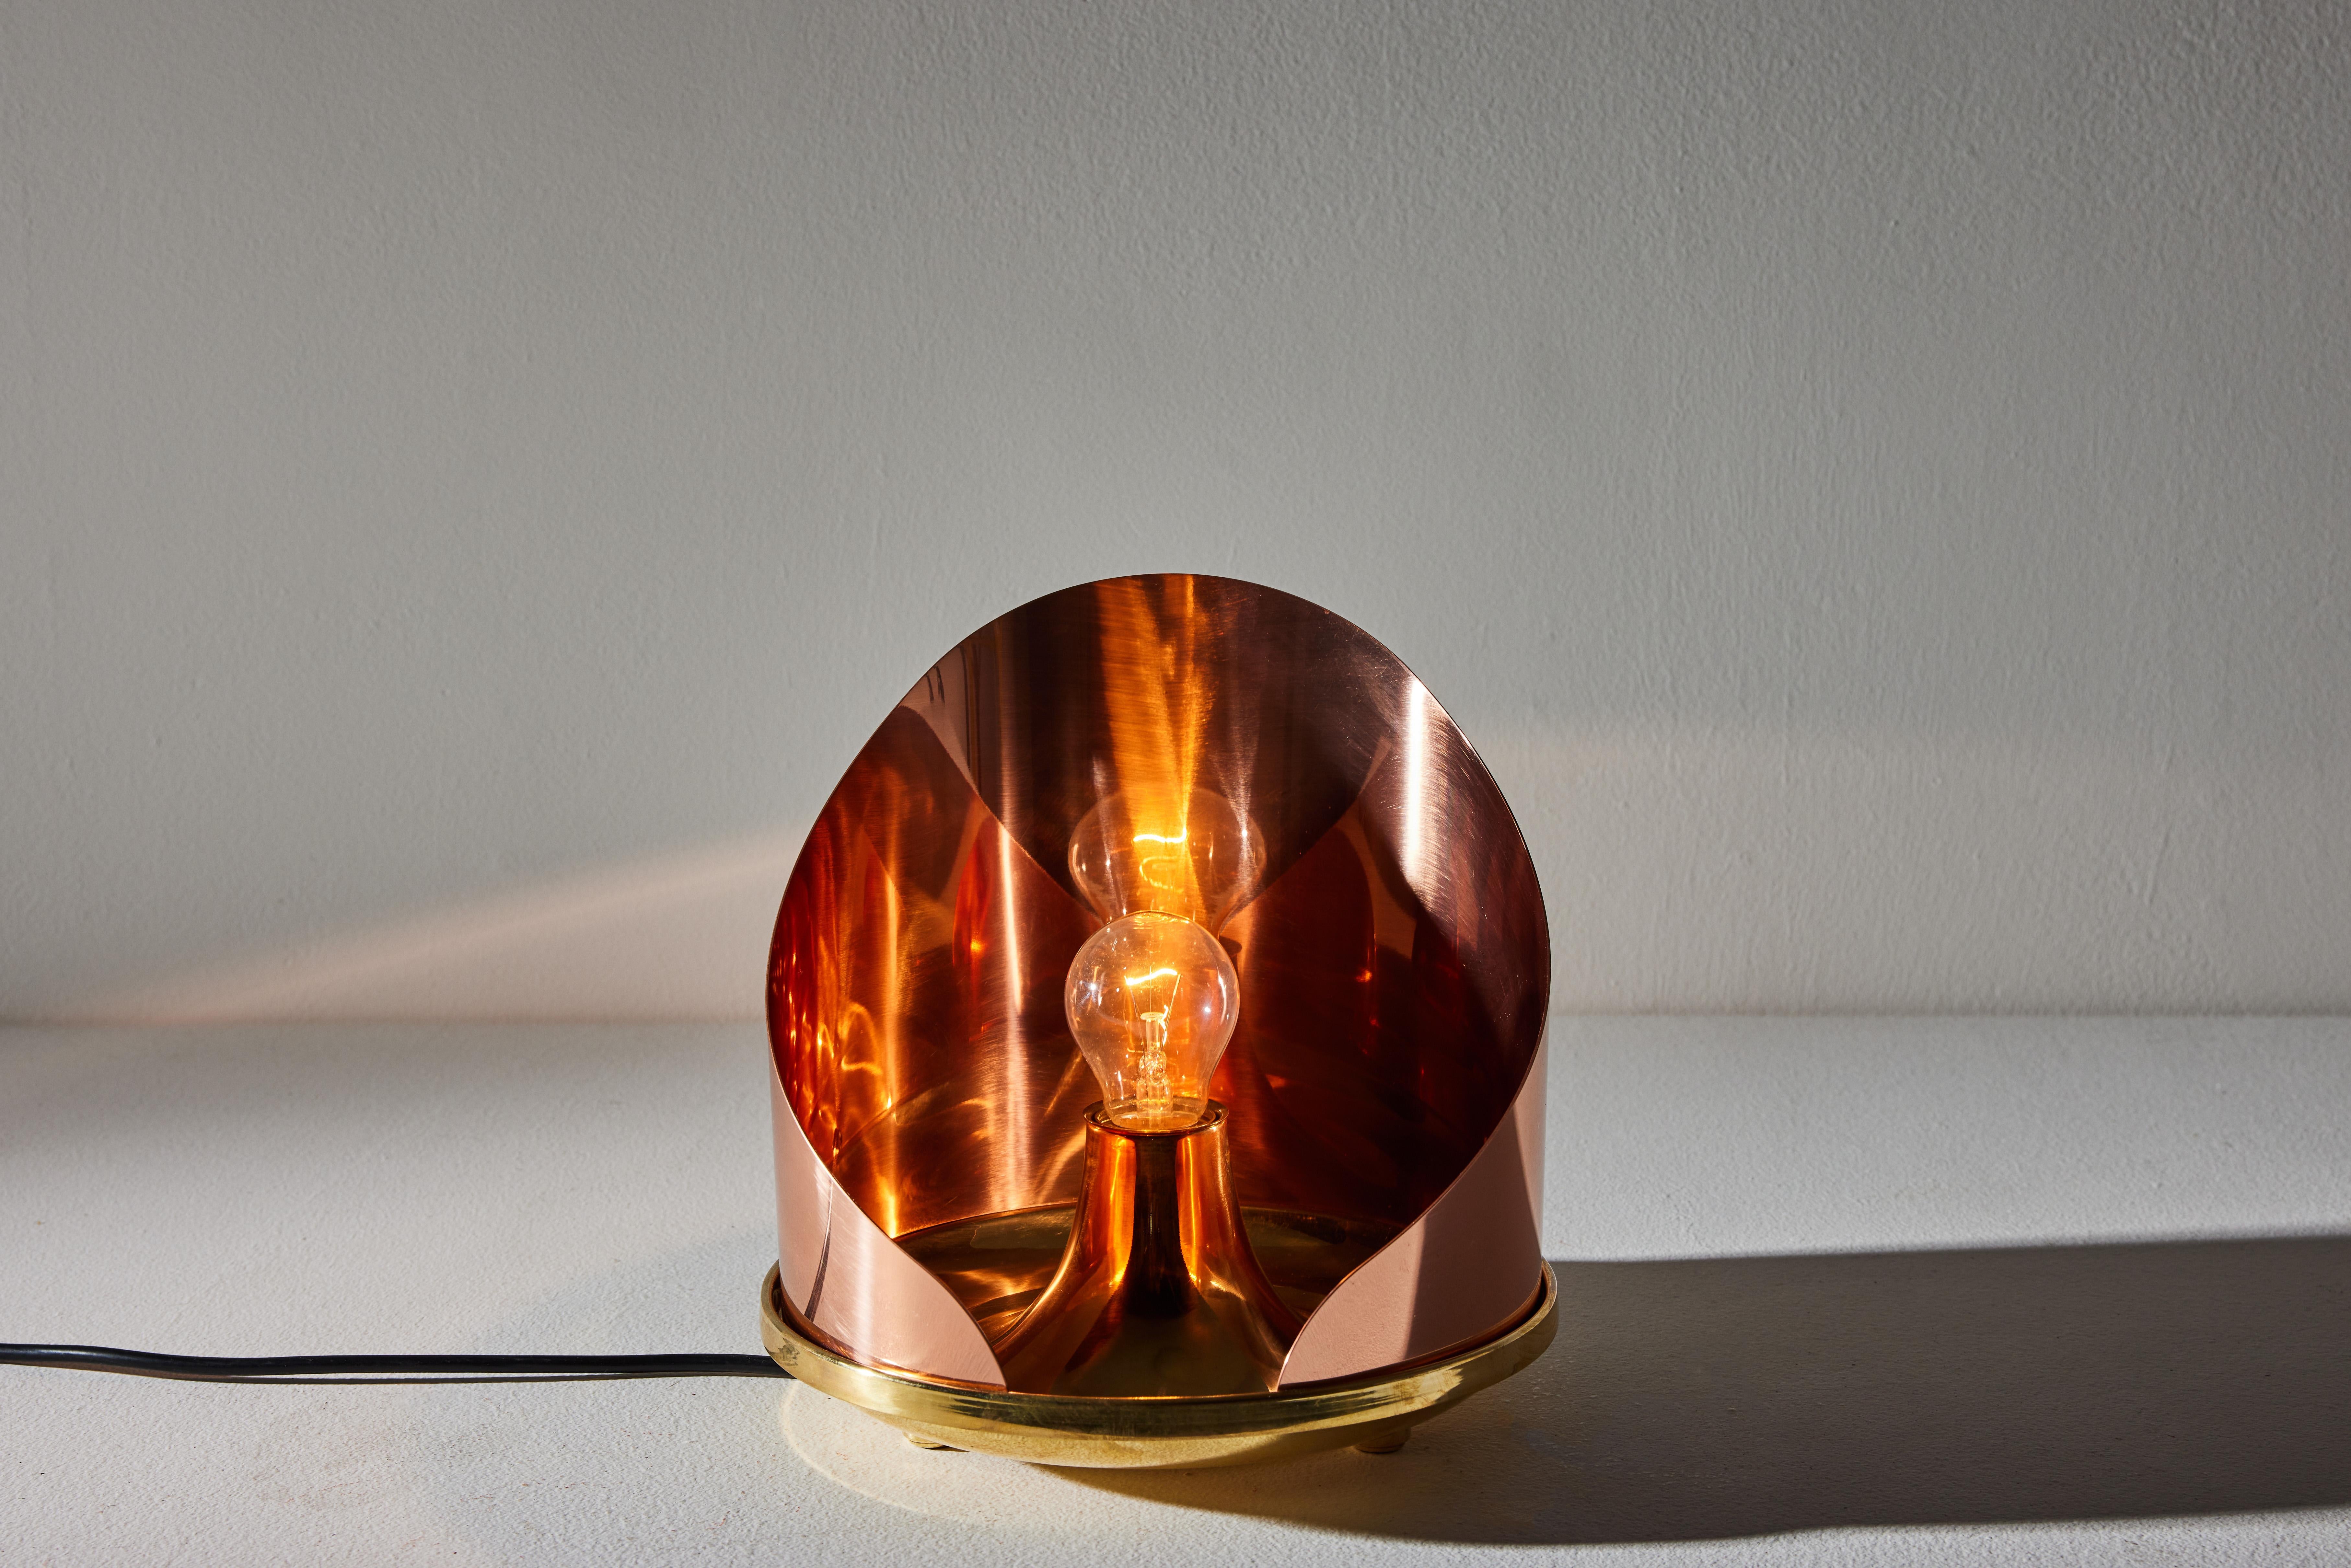 Model Lta12 Ventola Table Lamp by Luigi Caccia Dominioni for Azucena In Good Condition For Sale In Los Angeles, CA